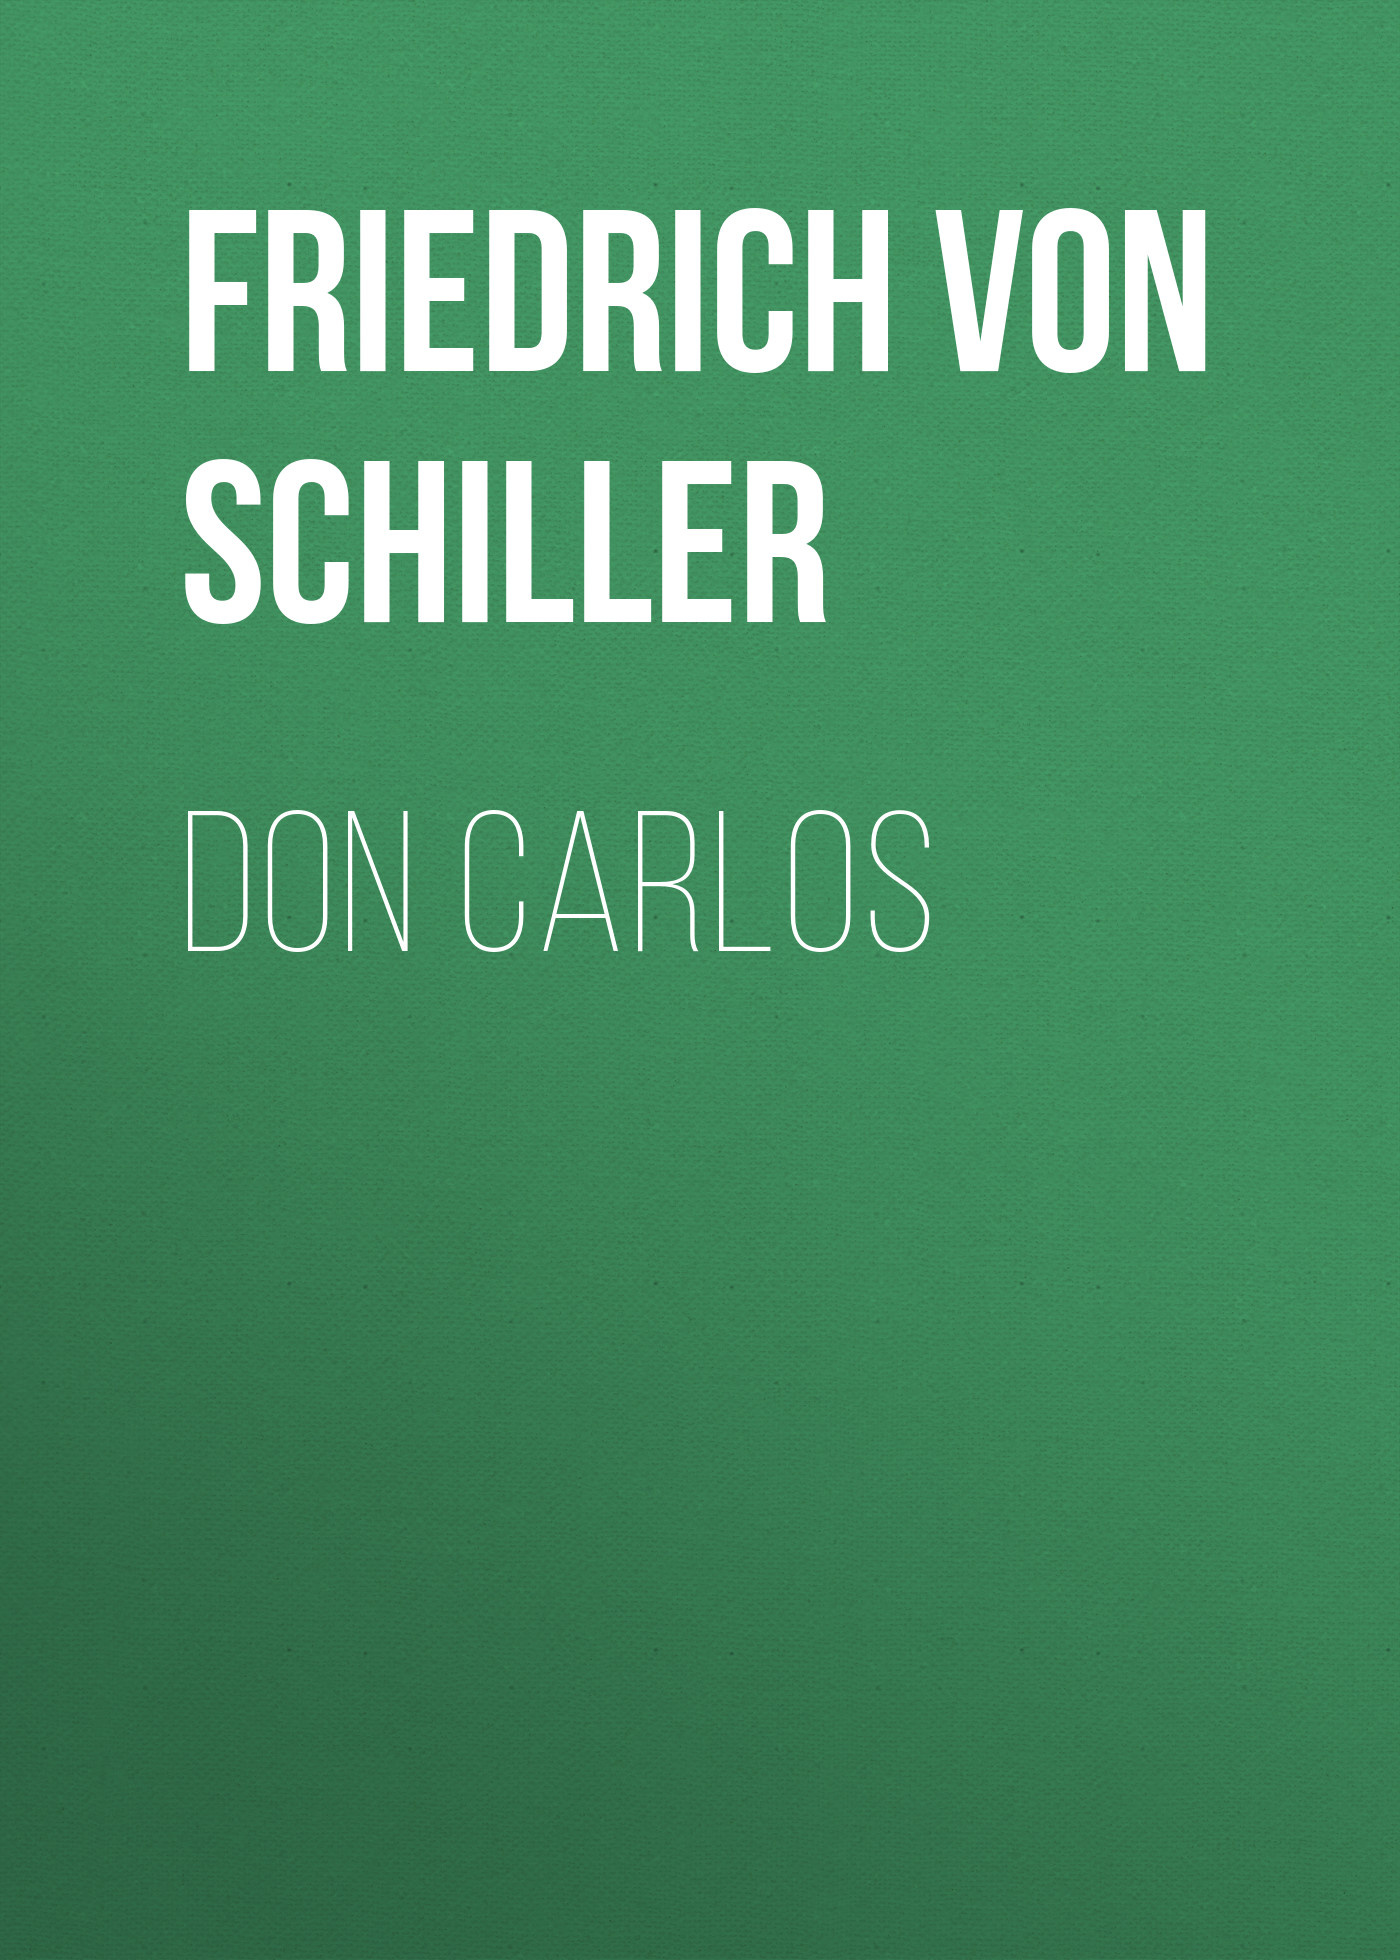 Книга Don Carlos из серии , созданная Friedrich Schiller, может относится к жанру Литература 18 века, Драматургия, Зарубежная старинная литература, Зарубежная классика, Зарубежная драматургия. Стоимость электронной книги Don Carlos с идентификатором 25449684 составляет 0 руб.